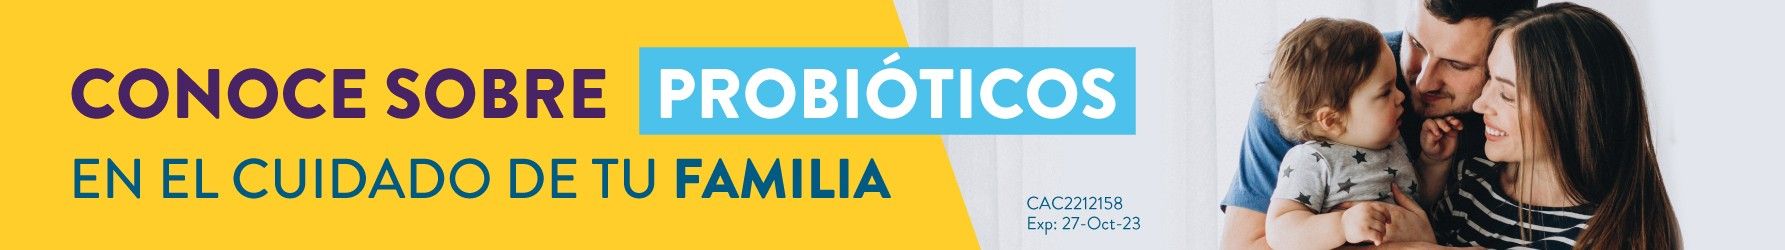 Banner-Probioticos-Abox_Pagina-Principal_1785x250px